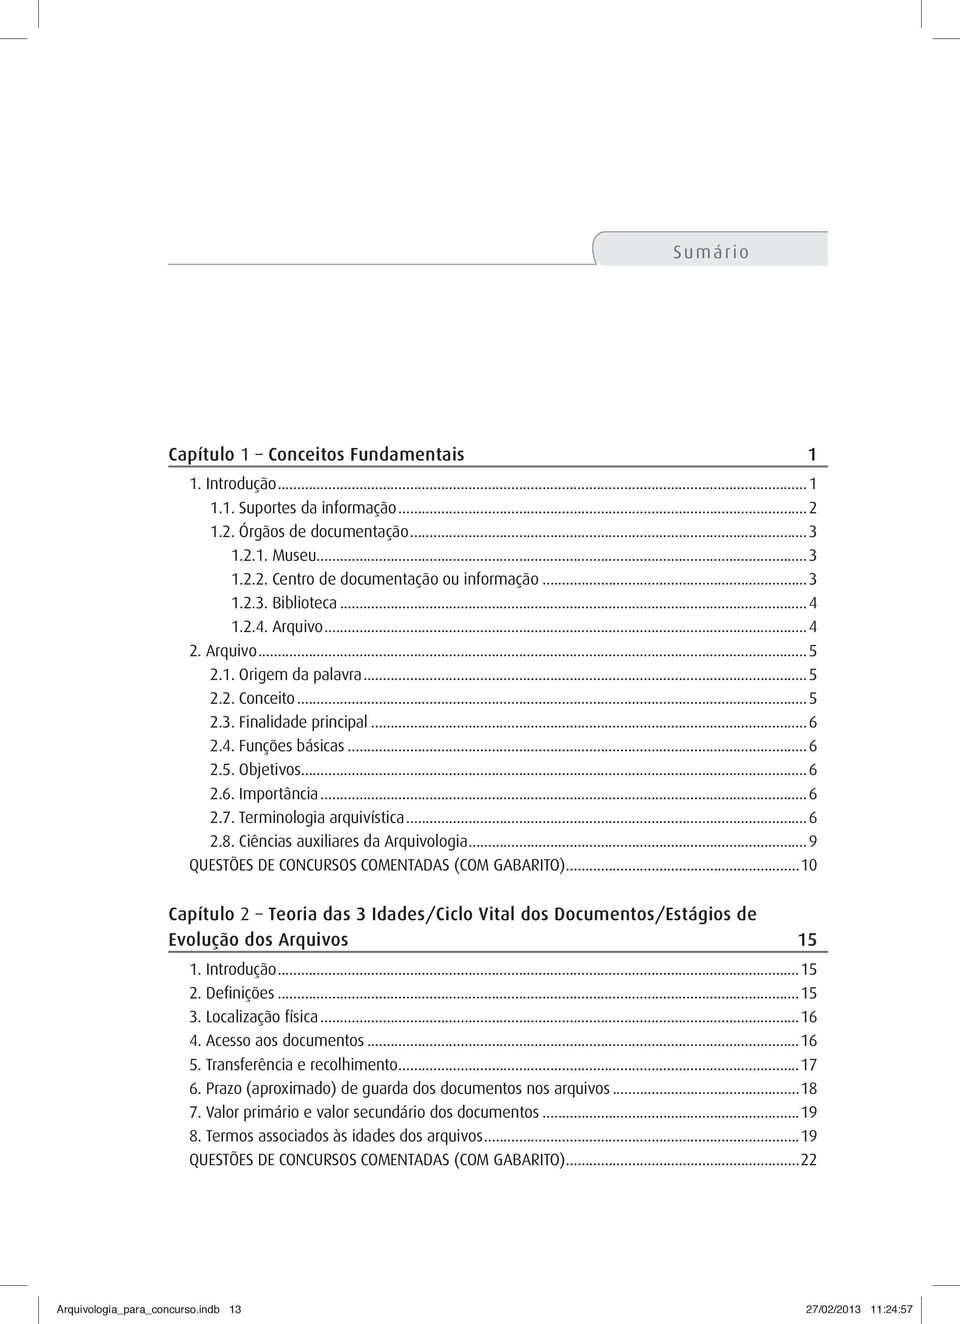 Terminologia arquivística...6 2.8. Ciências auxiliares da Arquivologia...9 QUESTÕES DE CONCURSOS COMENTADAS (COM GABARITO).